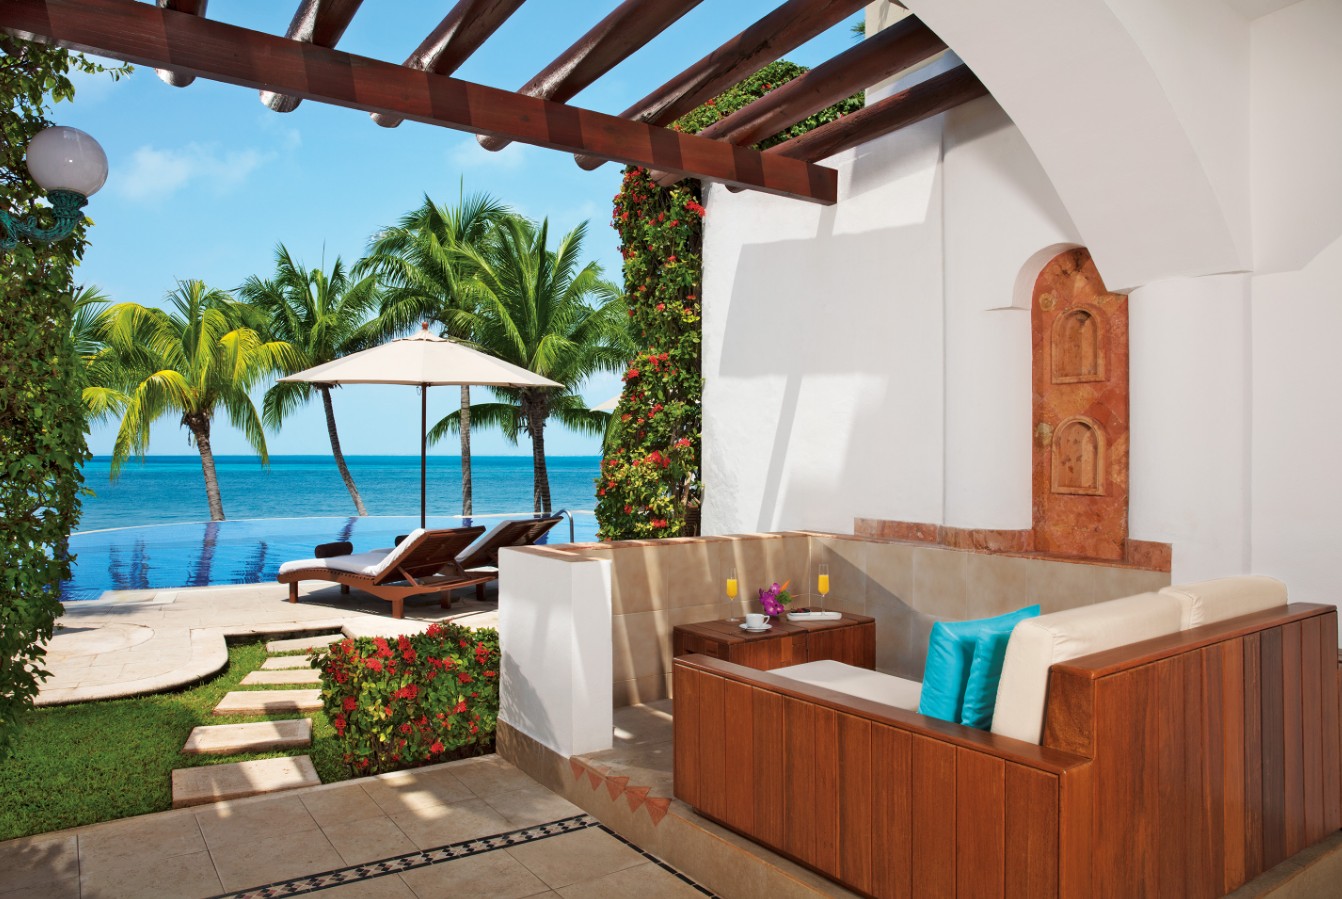 Junior Suite Veranda Ocean Front, Zoetry Villa Rolandi Isla Mujeres 5*